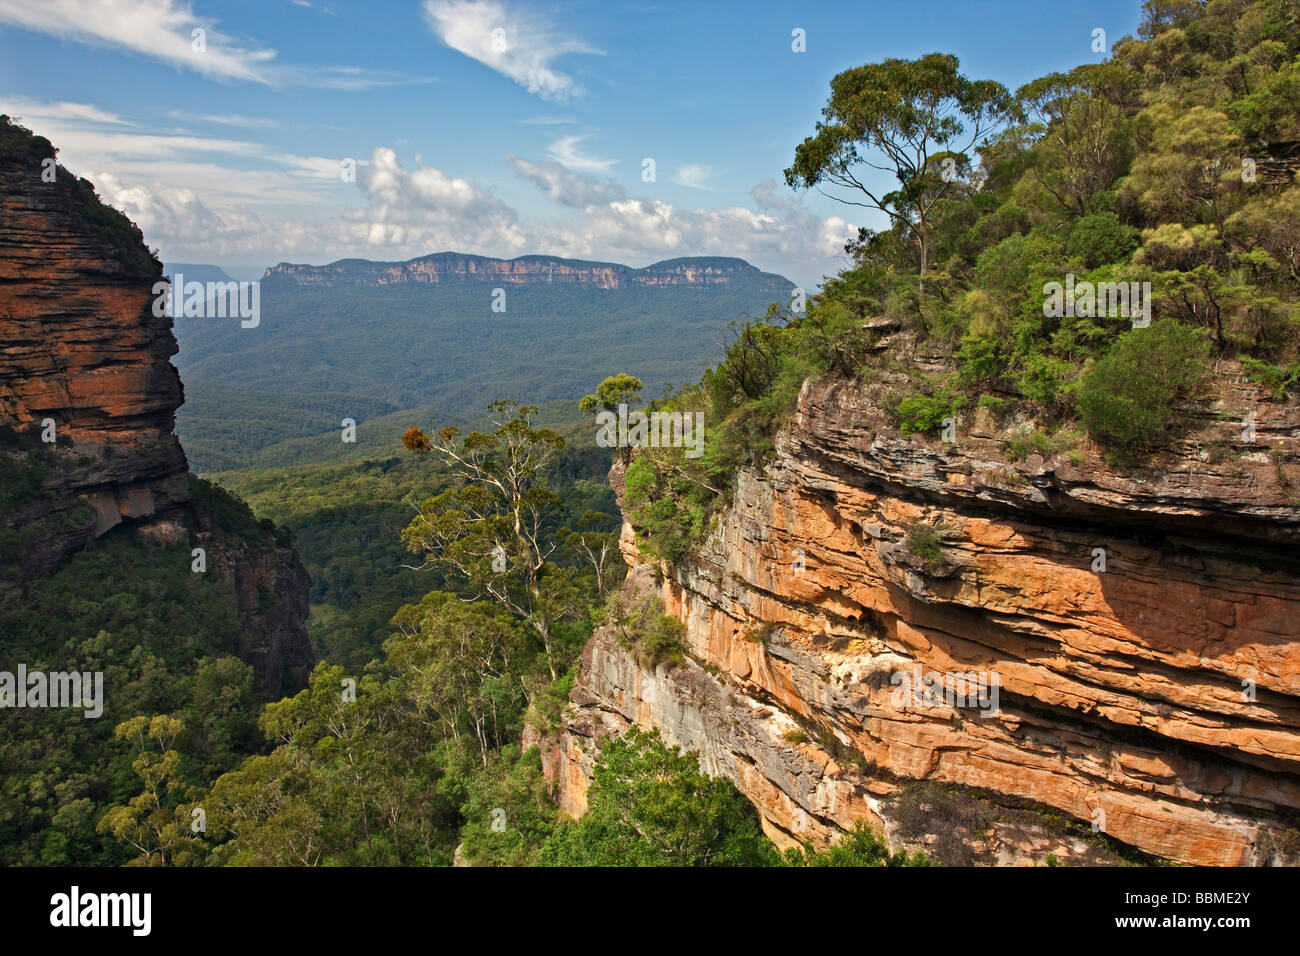 Australie Nouvelle Galles du Sud. Une vue de la vallée Jamison dans les Montagnes Bleues de Prince Henry Cliff Walk. Banque D'Images